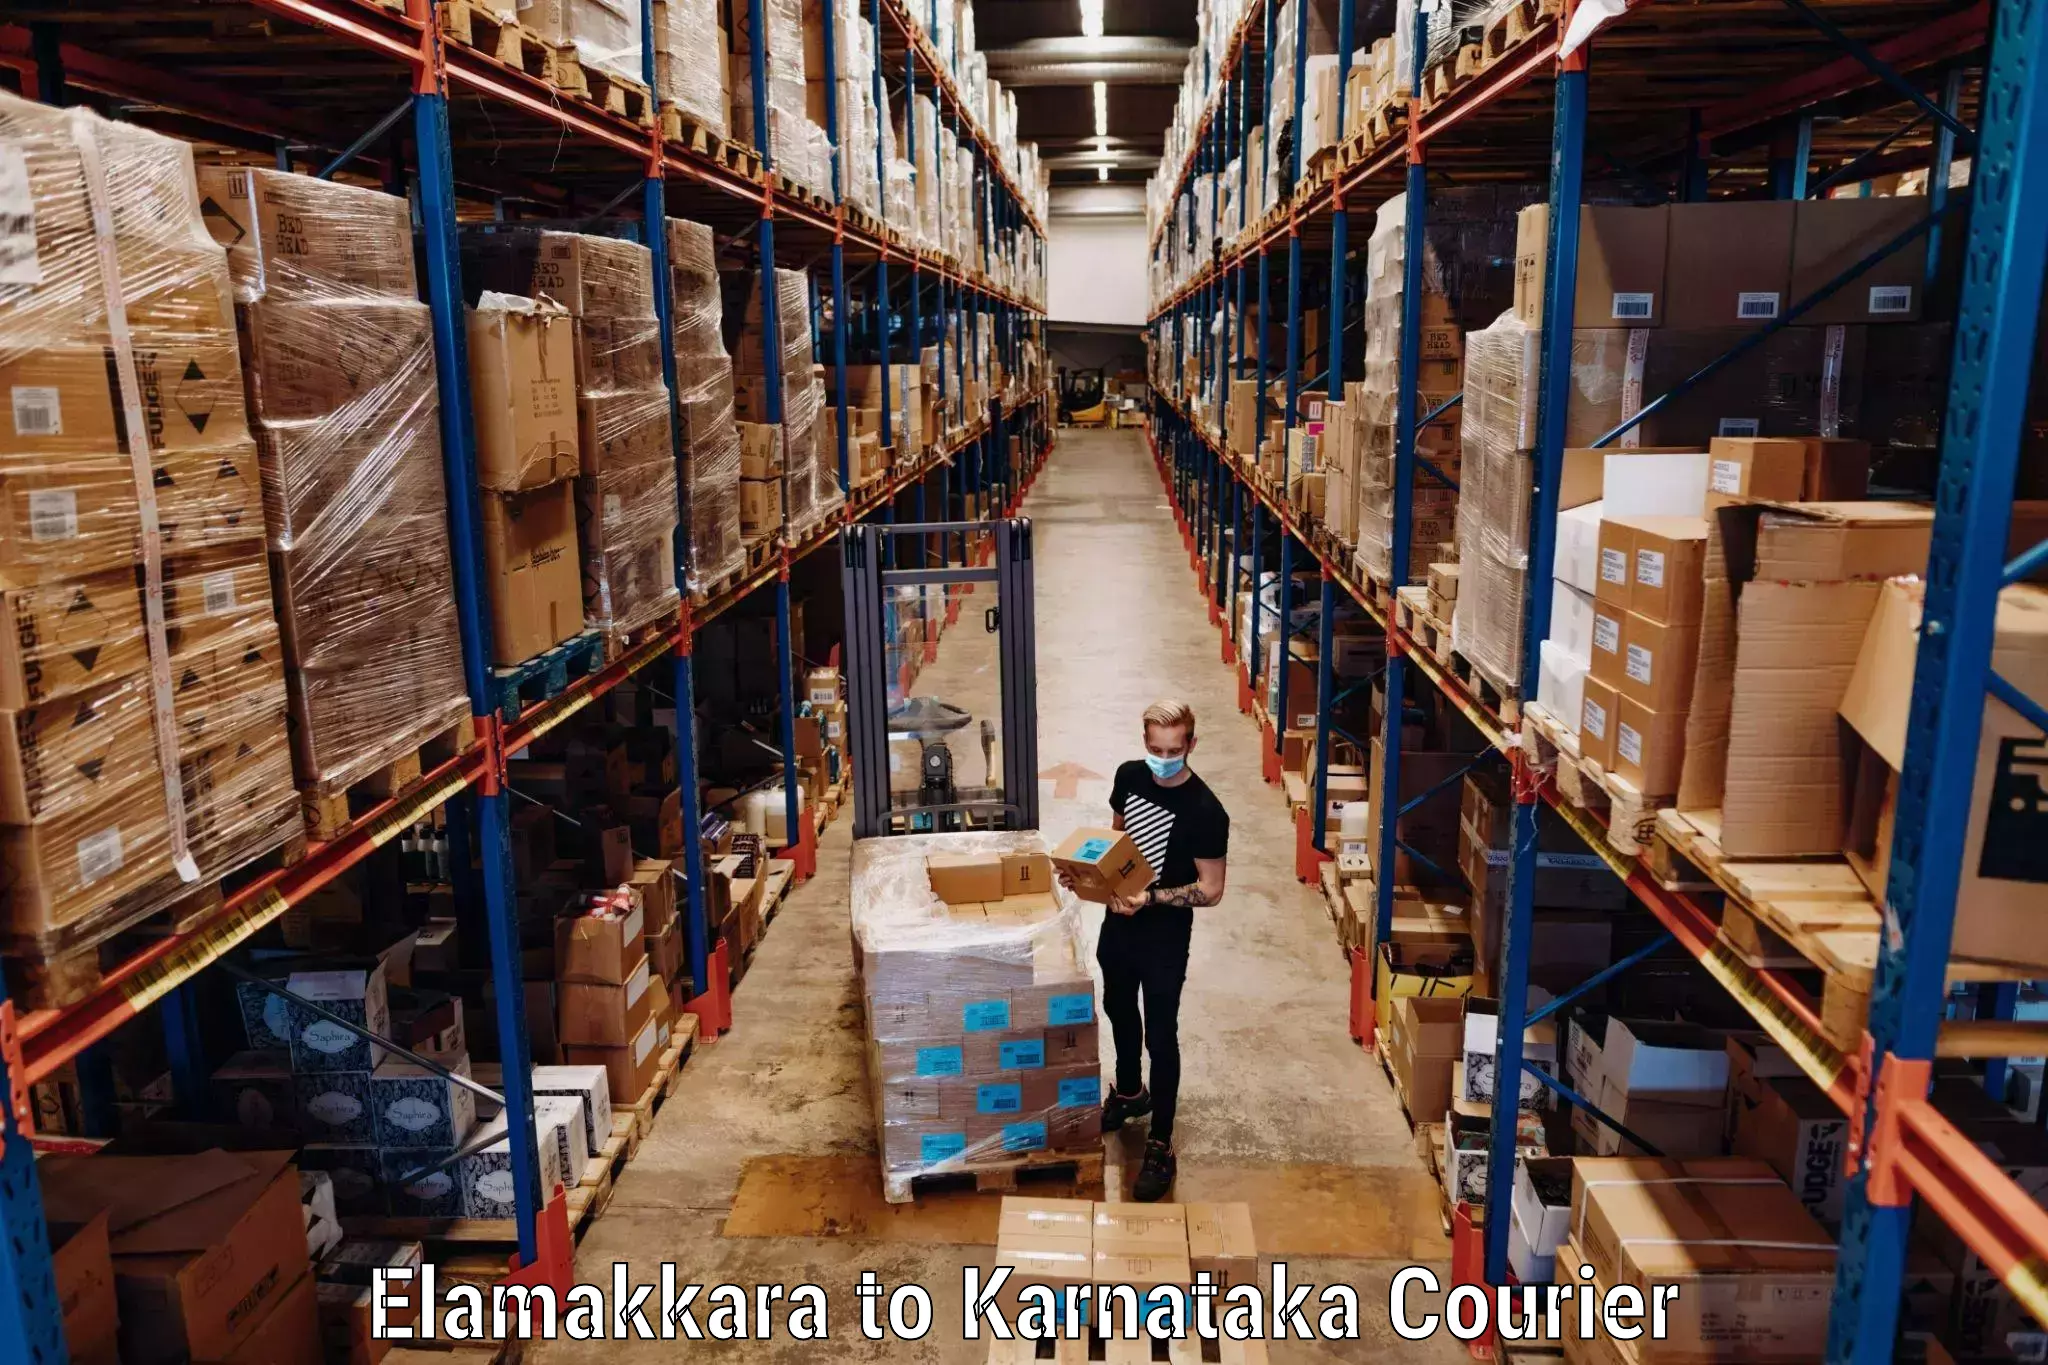 Luggage shipping guide Elamakkara to Bangarapet